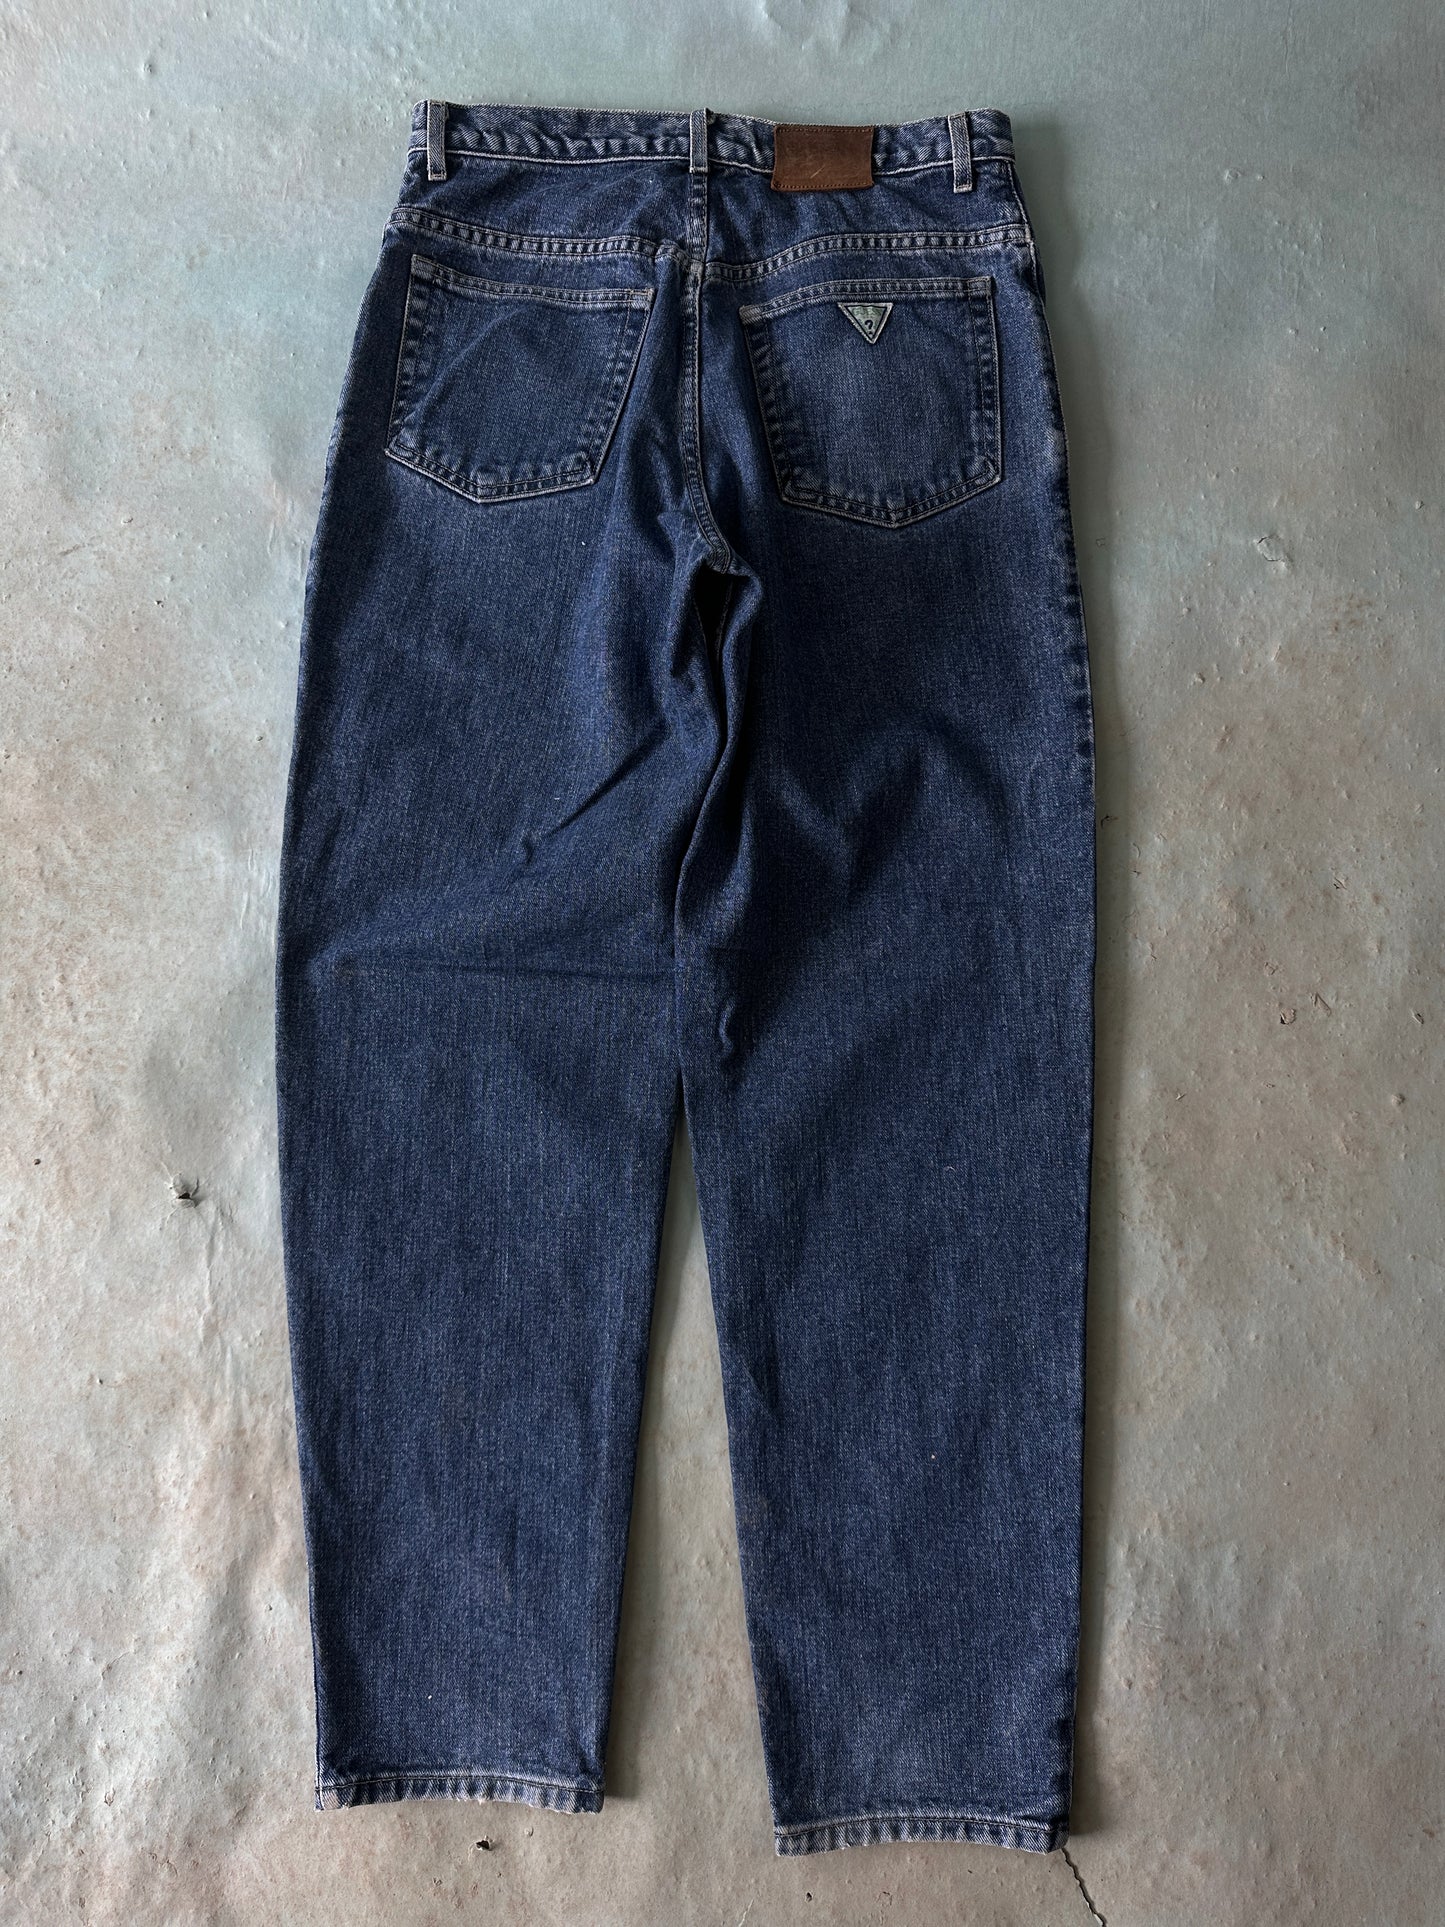 Guess Vintage Jeans - 32 x 32